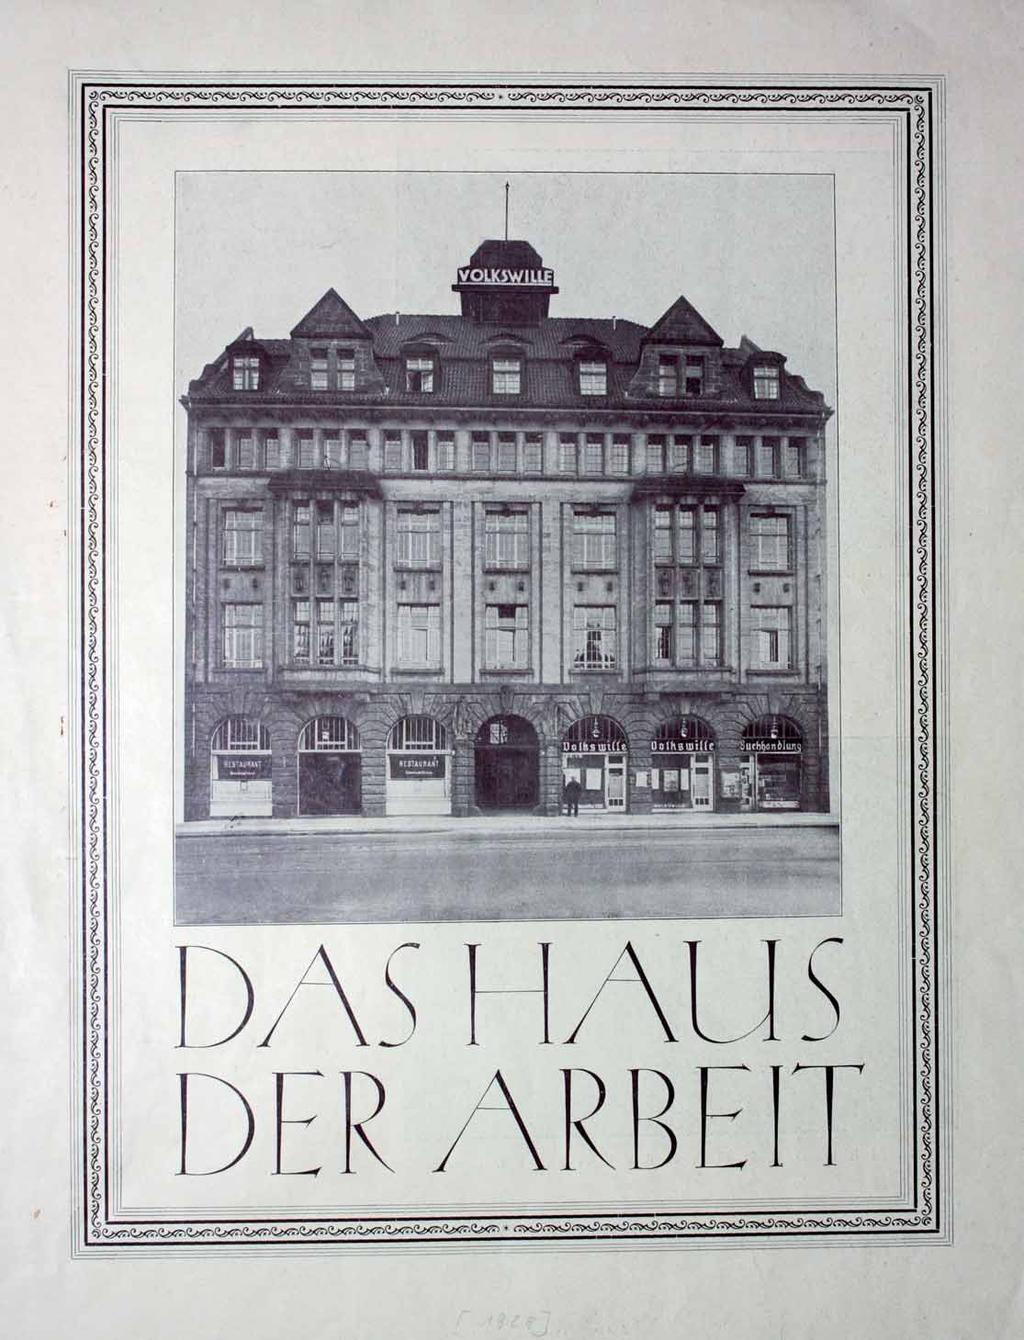 1919 wird das benachbarte ehemalige Kriegerheim übernommen und als»volksheim«umgewidmet, mit Saalbauten und Versammlungsräumen. 1922 und 1925 entstehen Erweiterungsbauten.